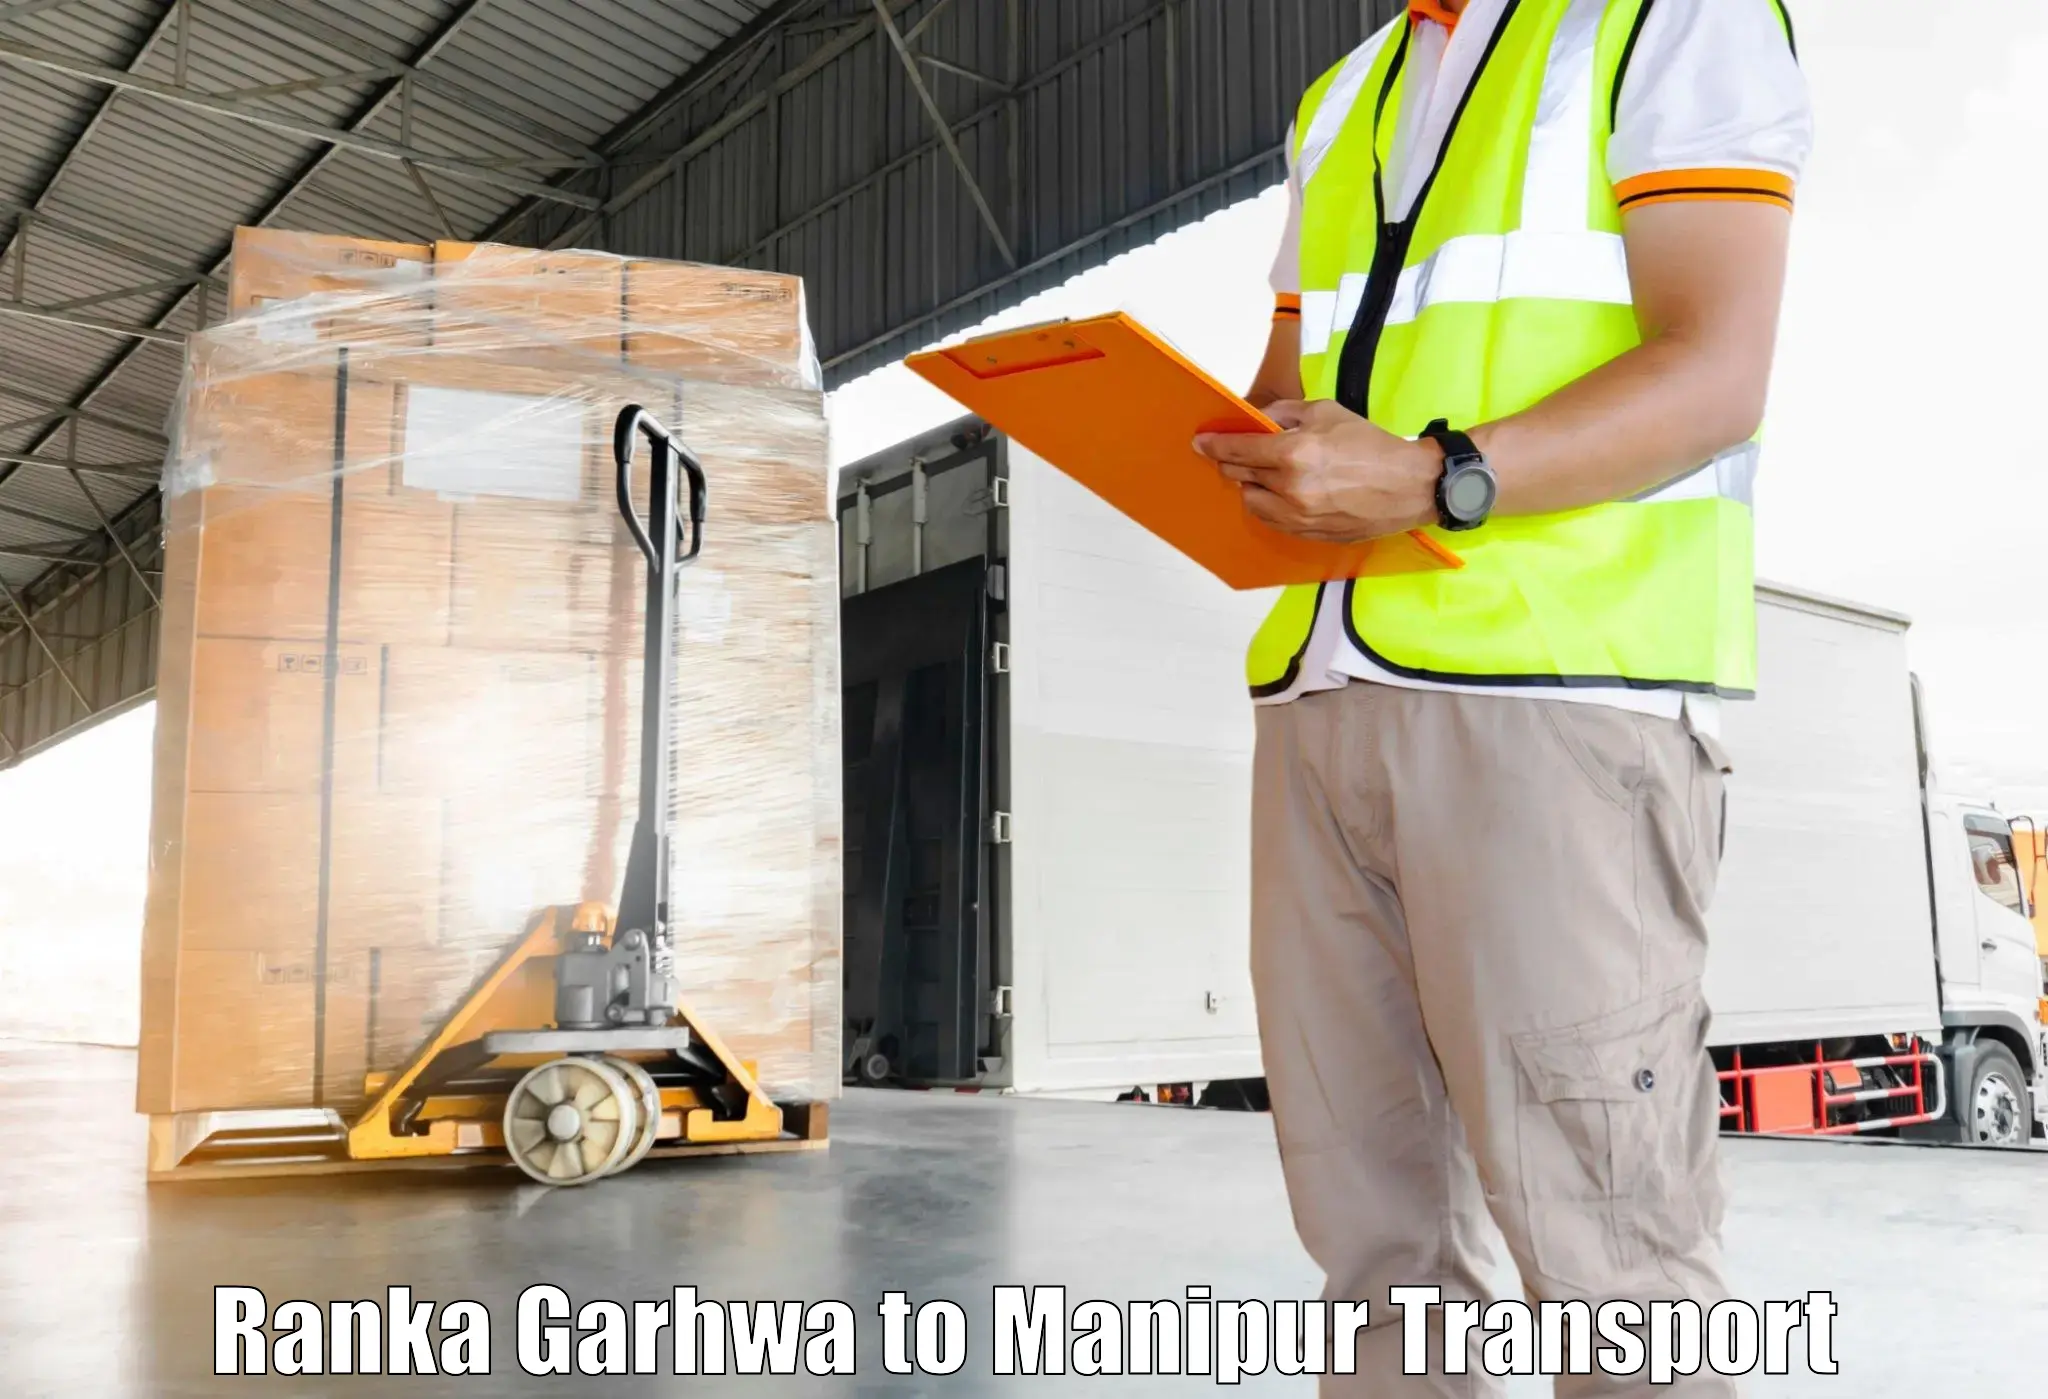 Furniture transport service Ranka Garhwa to Moirang